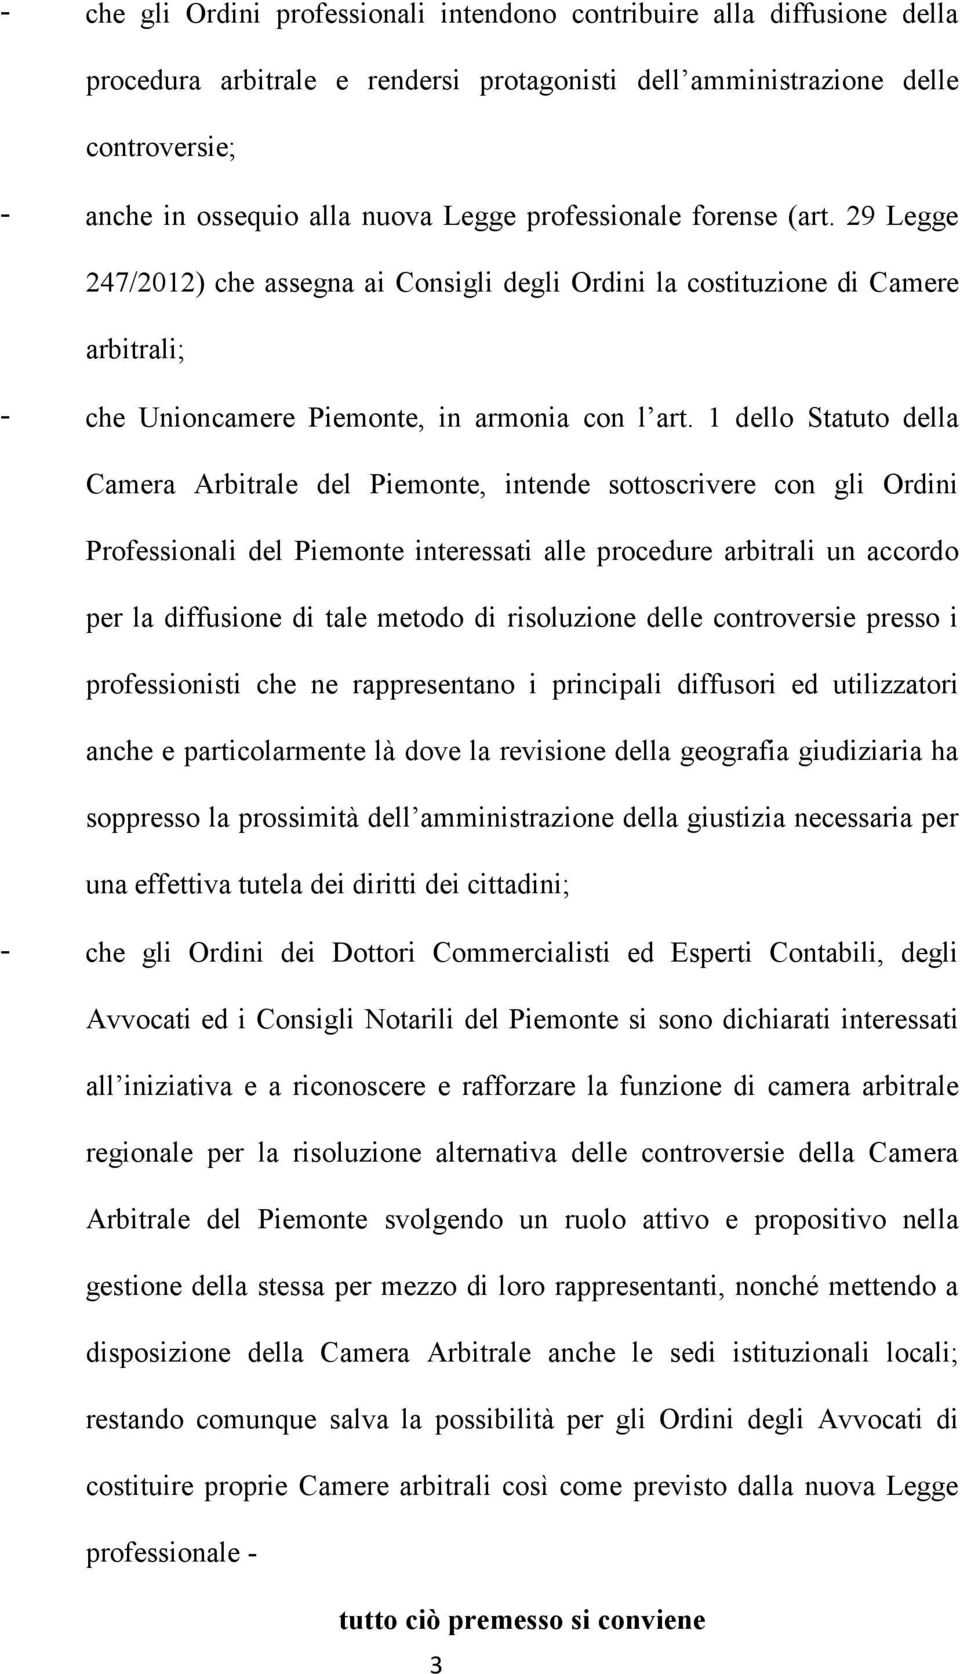 1 dello Statuto della Camera Arbitrale del Piemonte, intende sottoscrivere con gli Ordini Professionali del Piemonte interessati alle procedure arbitrali un accordo per la diffusione di tale metodo